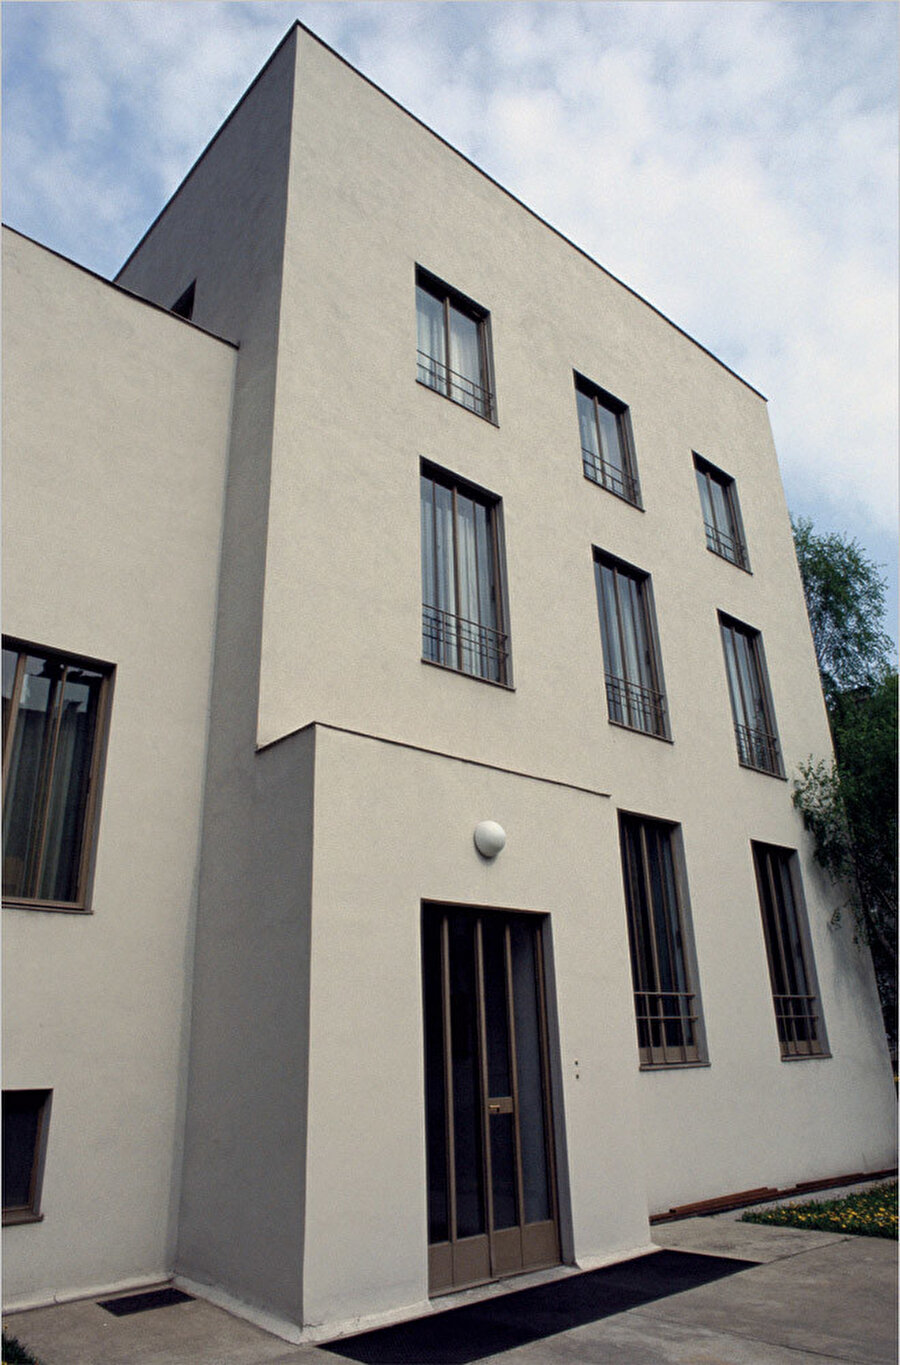 Wittgenstein ve mimar arkadaşı Paul Engelmann’ın birlikte yaptığı bu üç katlı evde, Christopher Long’a göre Wittgenstein’ın etkisi belirgindir.